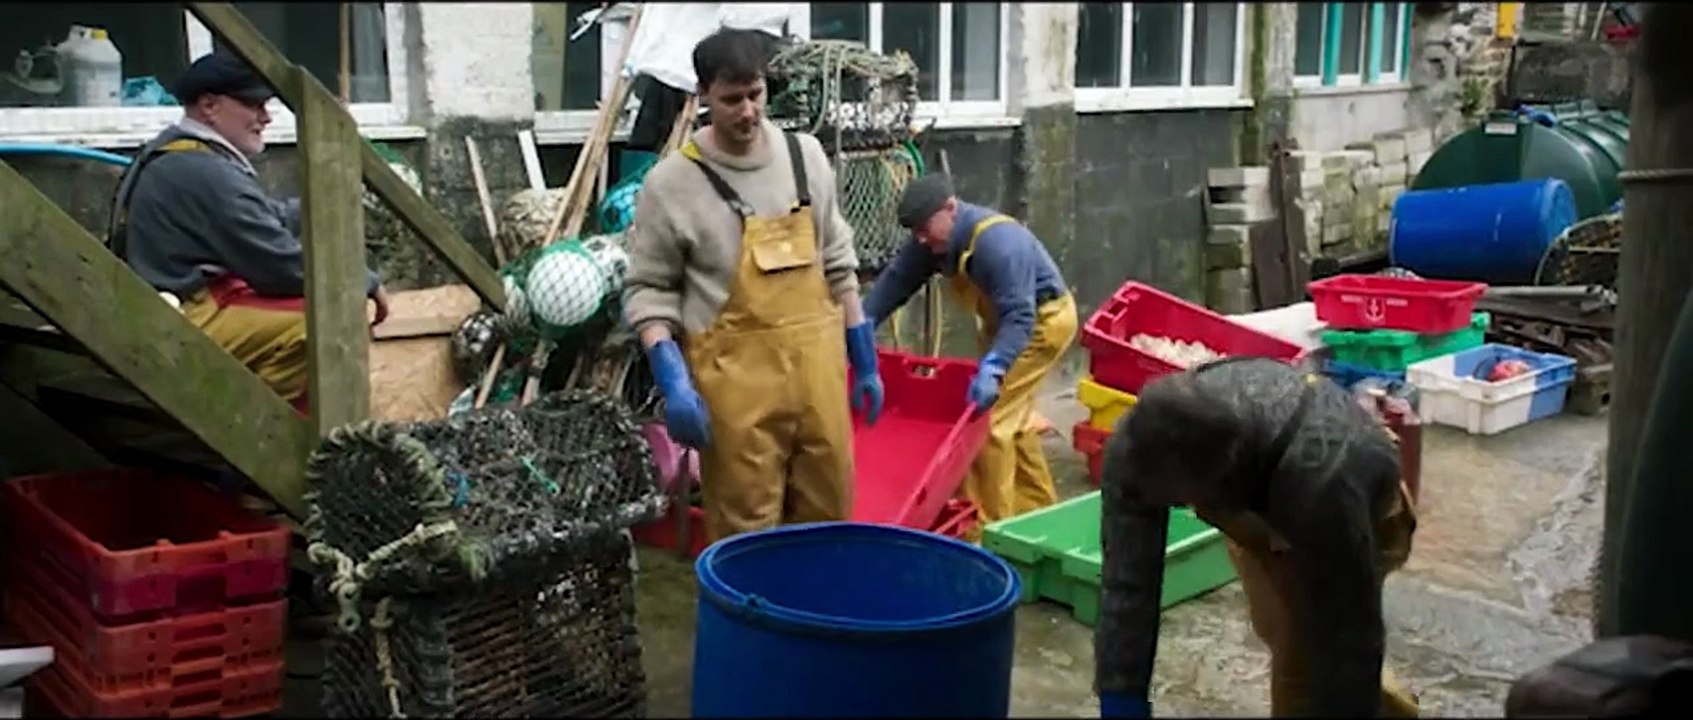 Fisherman's Friends - Vom Kutter in die Charts Trailer DF